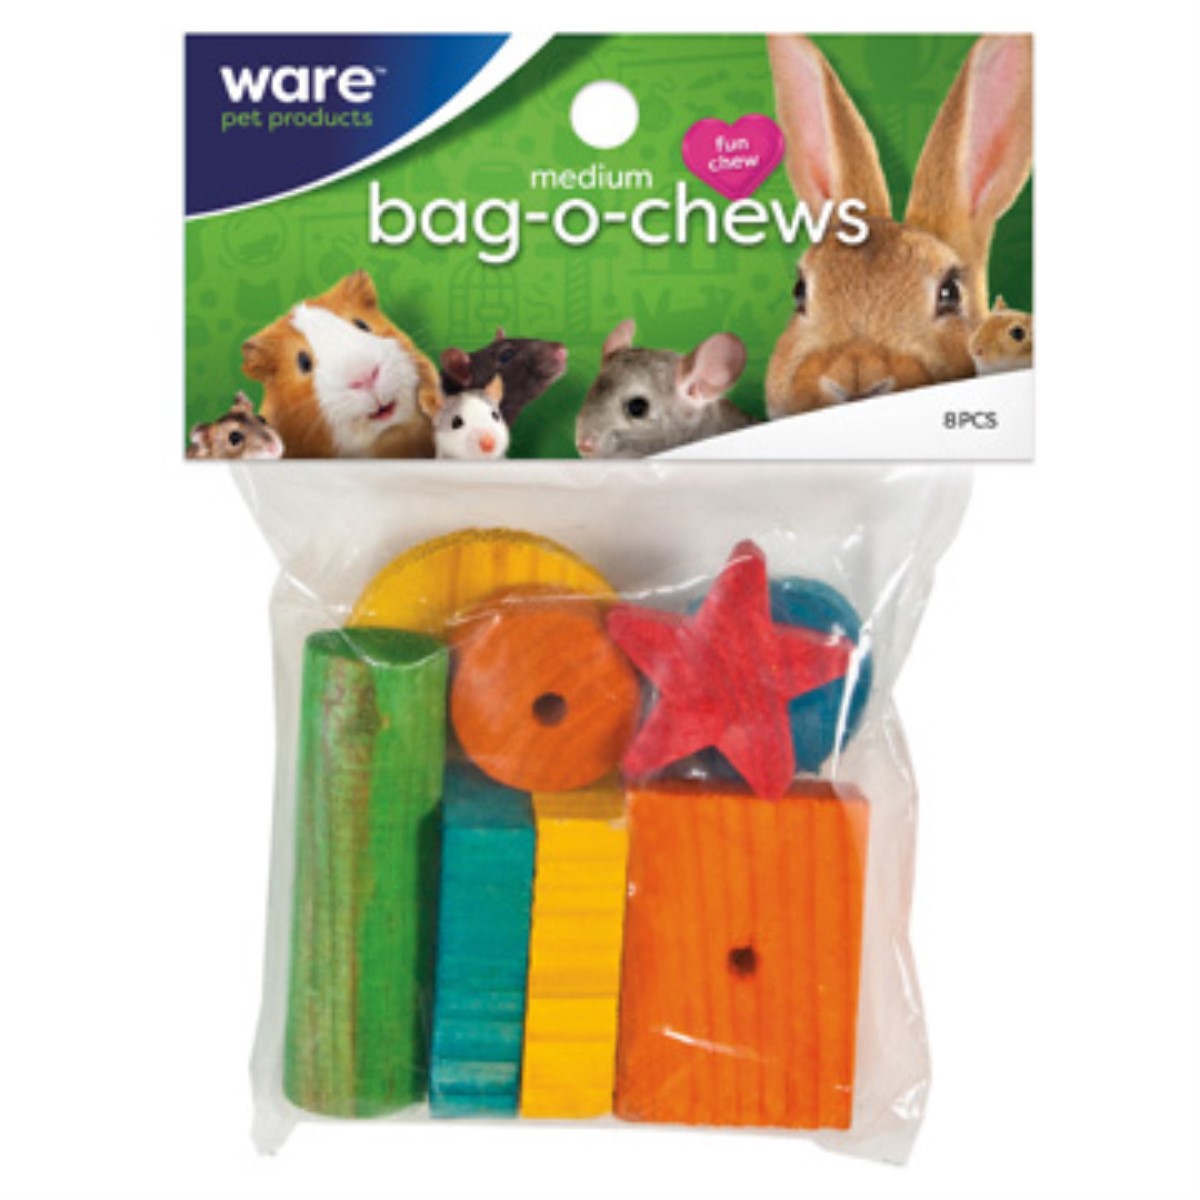 Ware Bag-O-Chews, 8 pc.